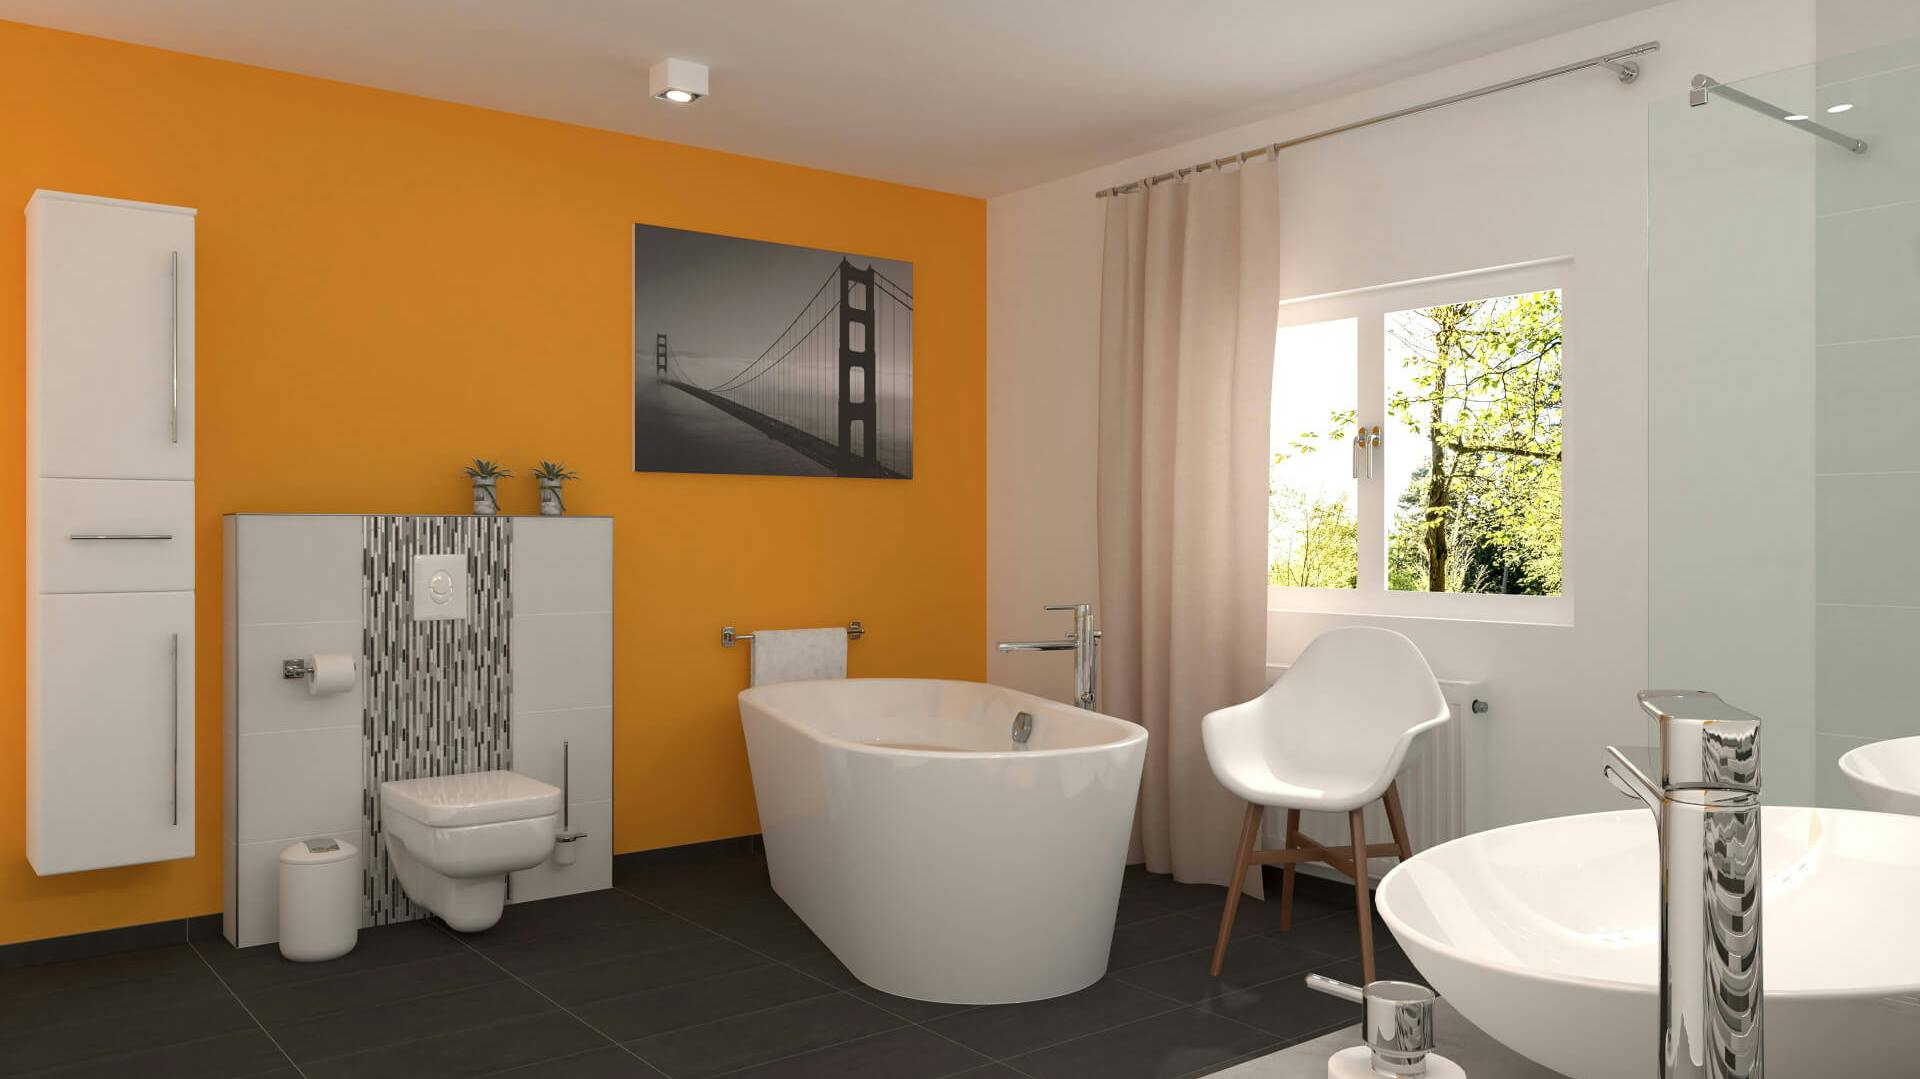 Großes, modernes Bad mit einer gelben Wand